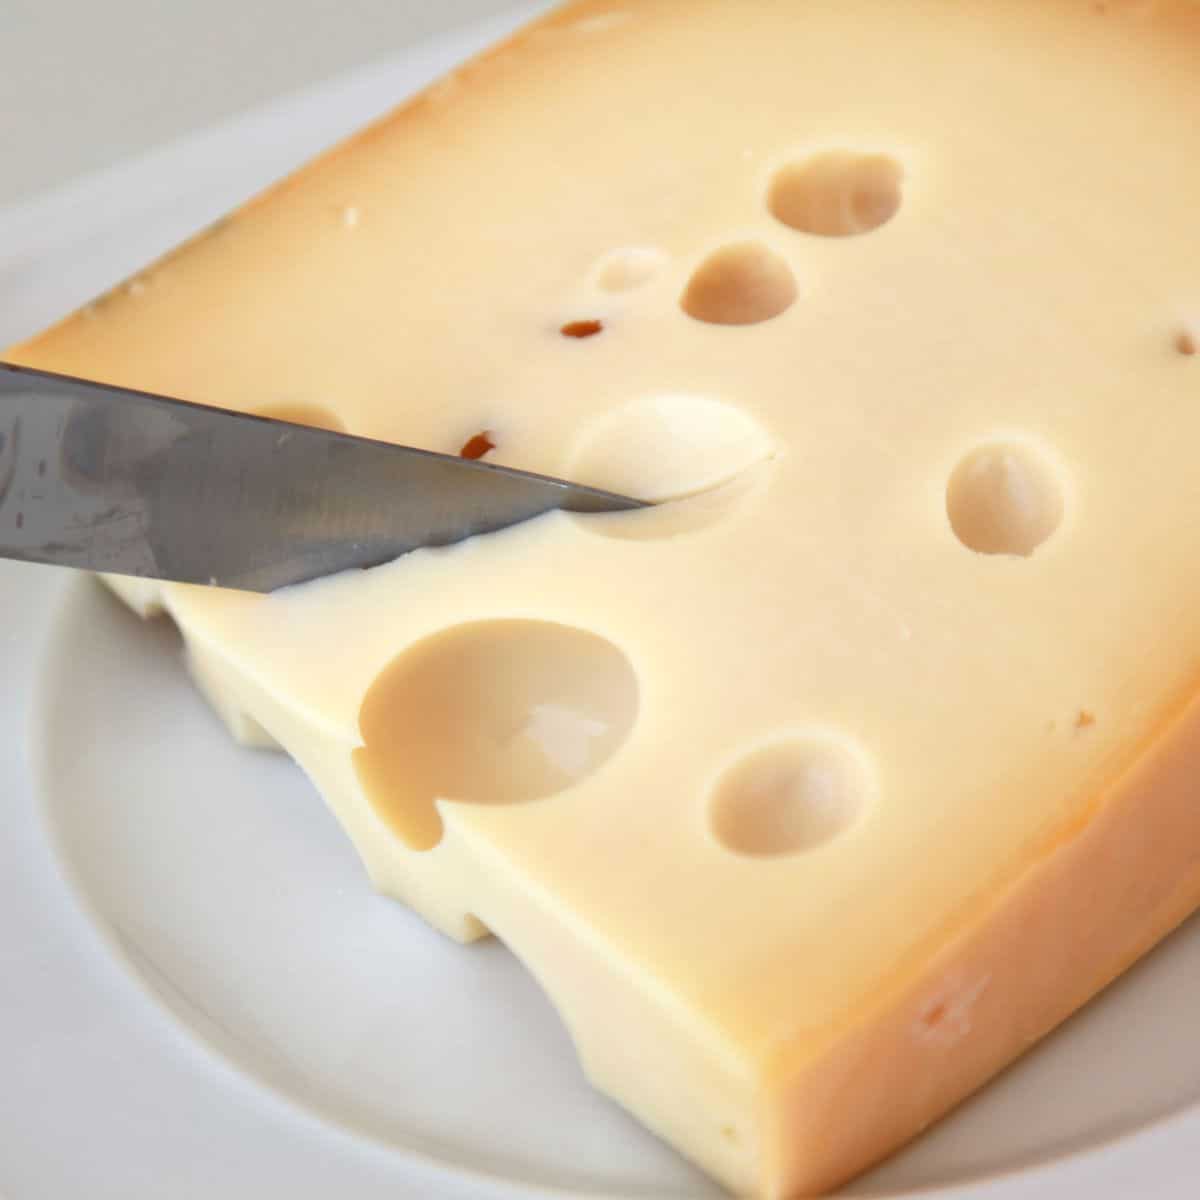 Quadratisches Bild von Schweizer Käse, der geschnitten wird.